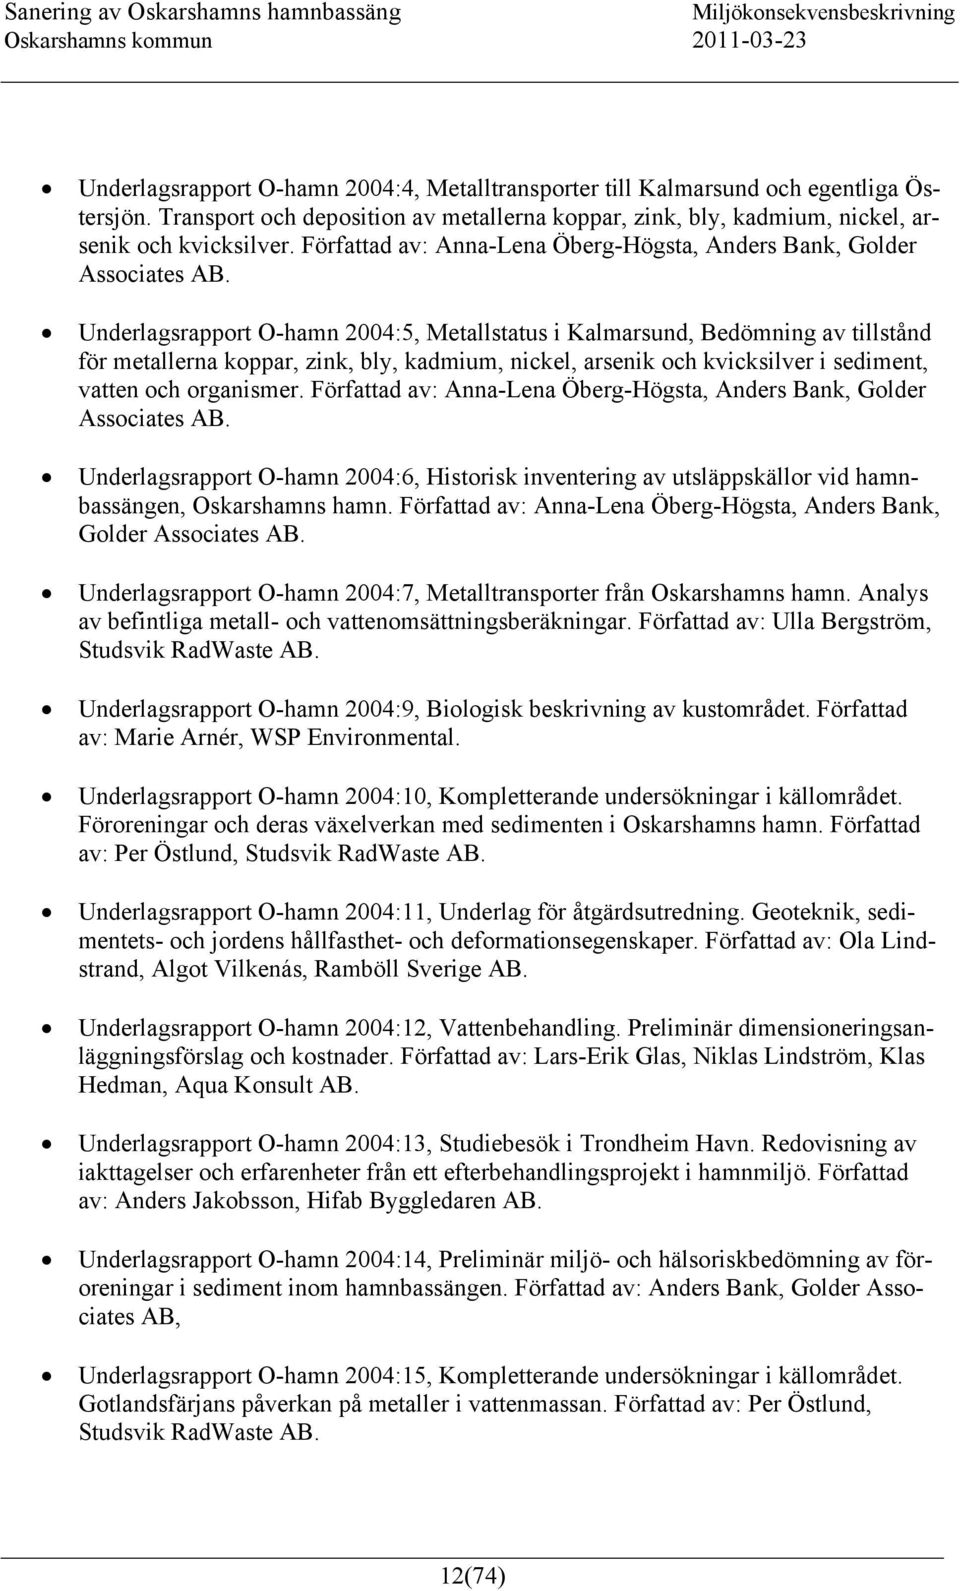 Underlagsrapport O-hamn 2004:5, Metallstatus i Kalmarsund, Bedömning av tillstånd för metallerna koppar, zink, bly, kadmium, nickel, arsenik och kvicksilver i sediment, vatten och organismer.